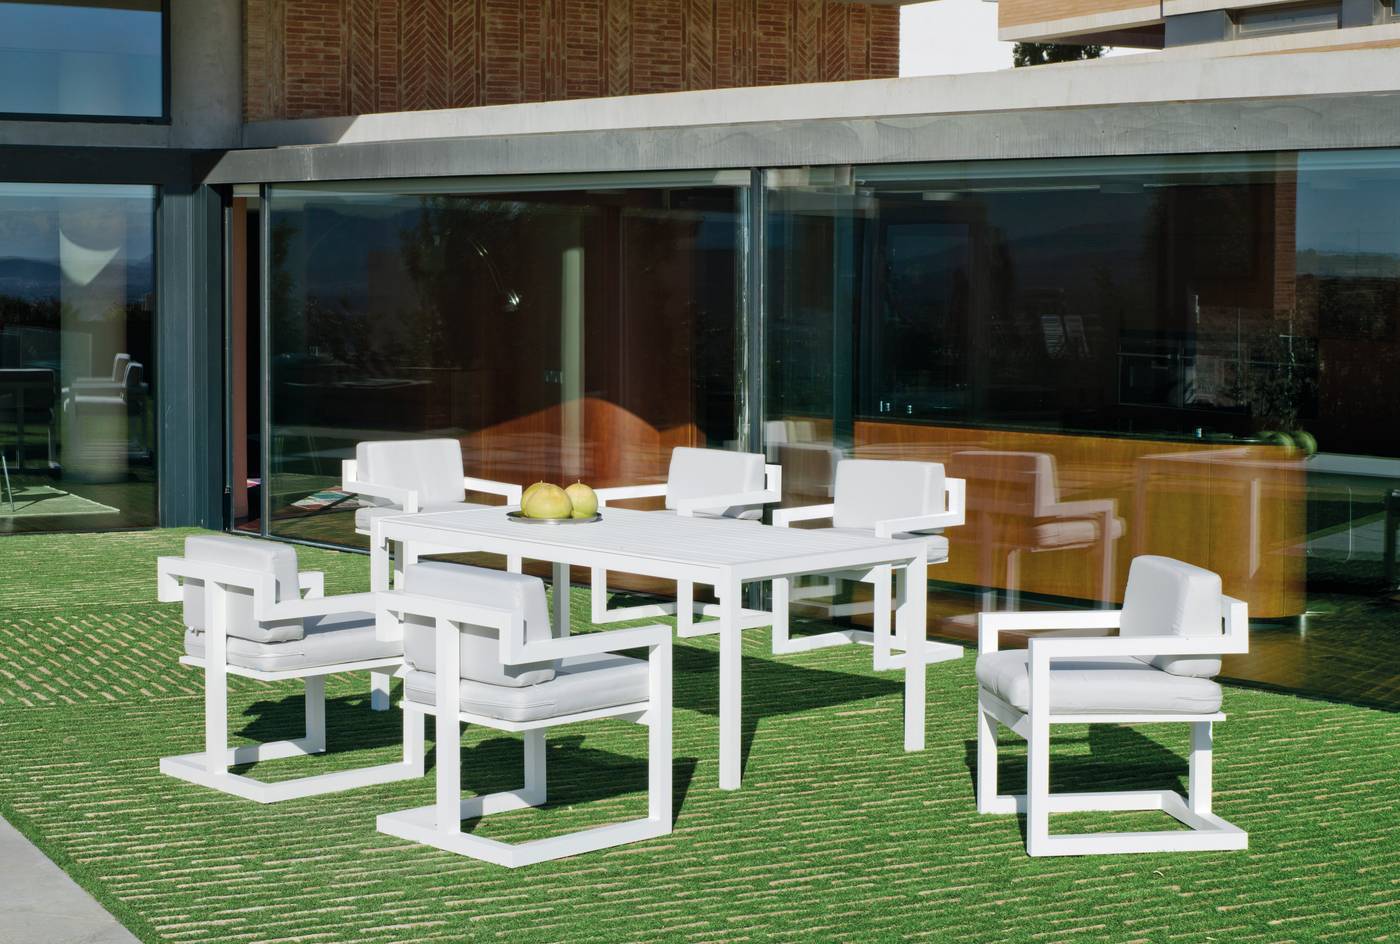 Sillón Aluminio Alhama-30 - Sillón comedor para jardín o terraza. Estructura, asiento y respaldo de aluminio en color blanco, antracita, champagne, plata o marrón.